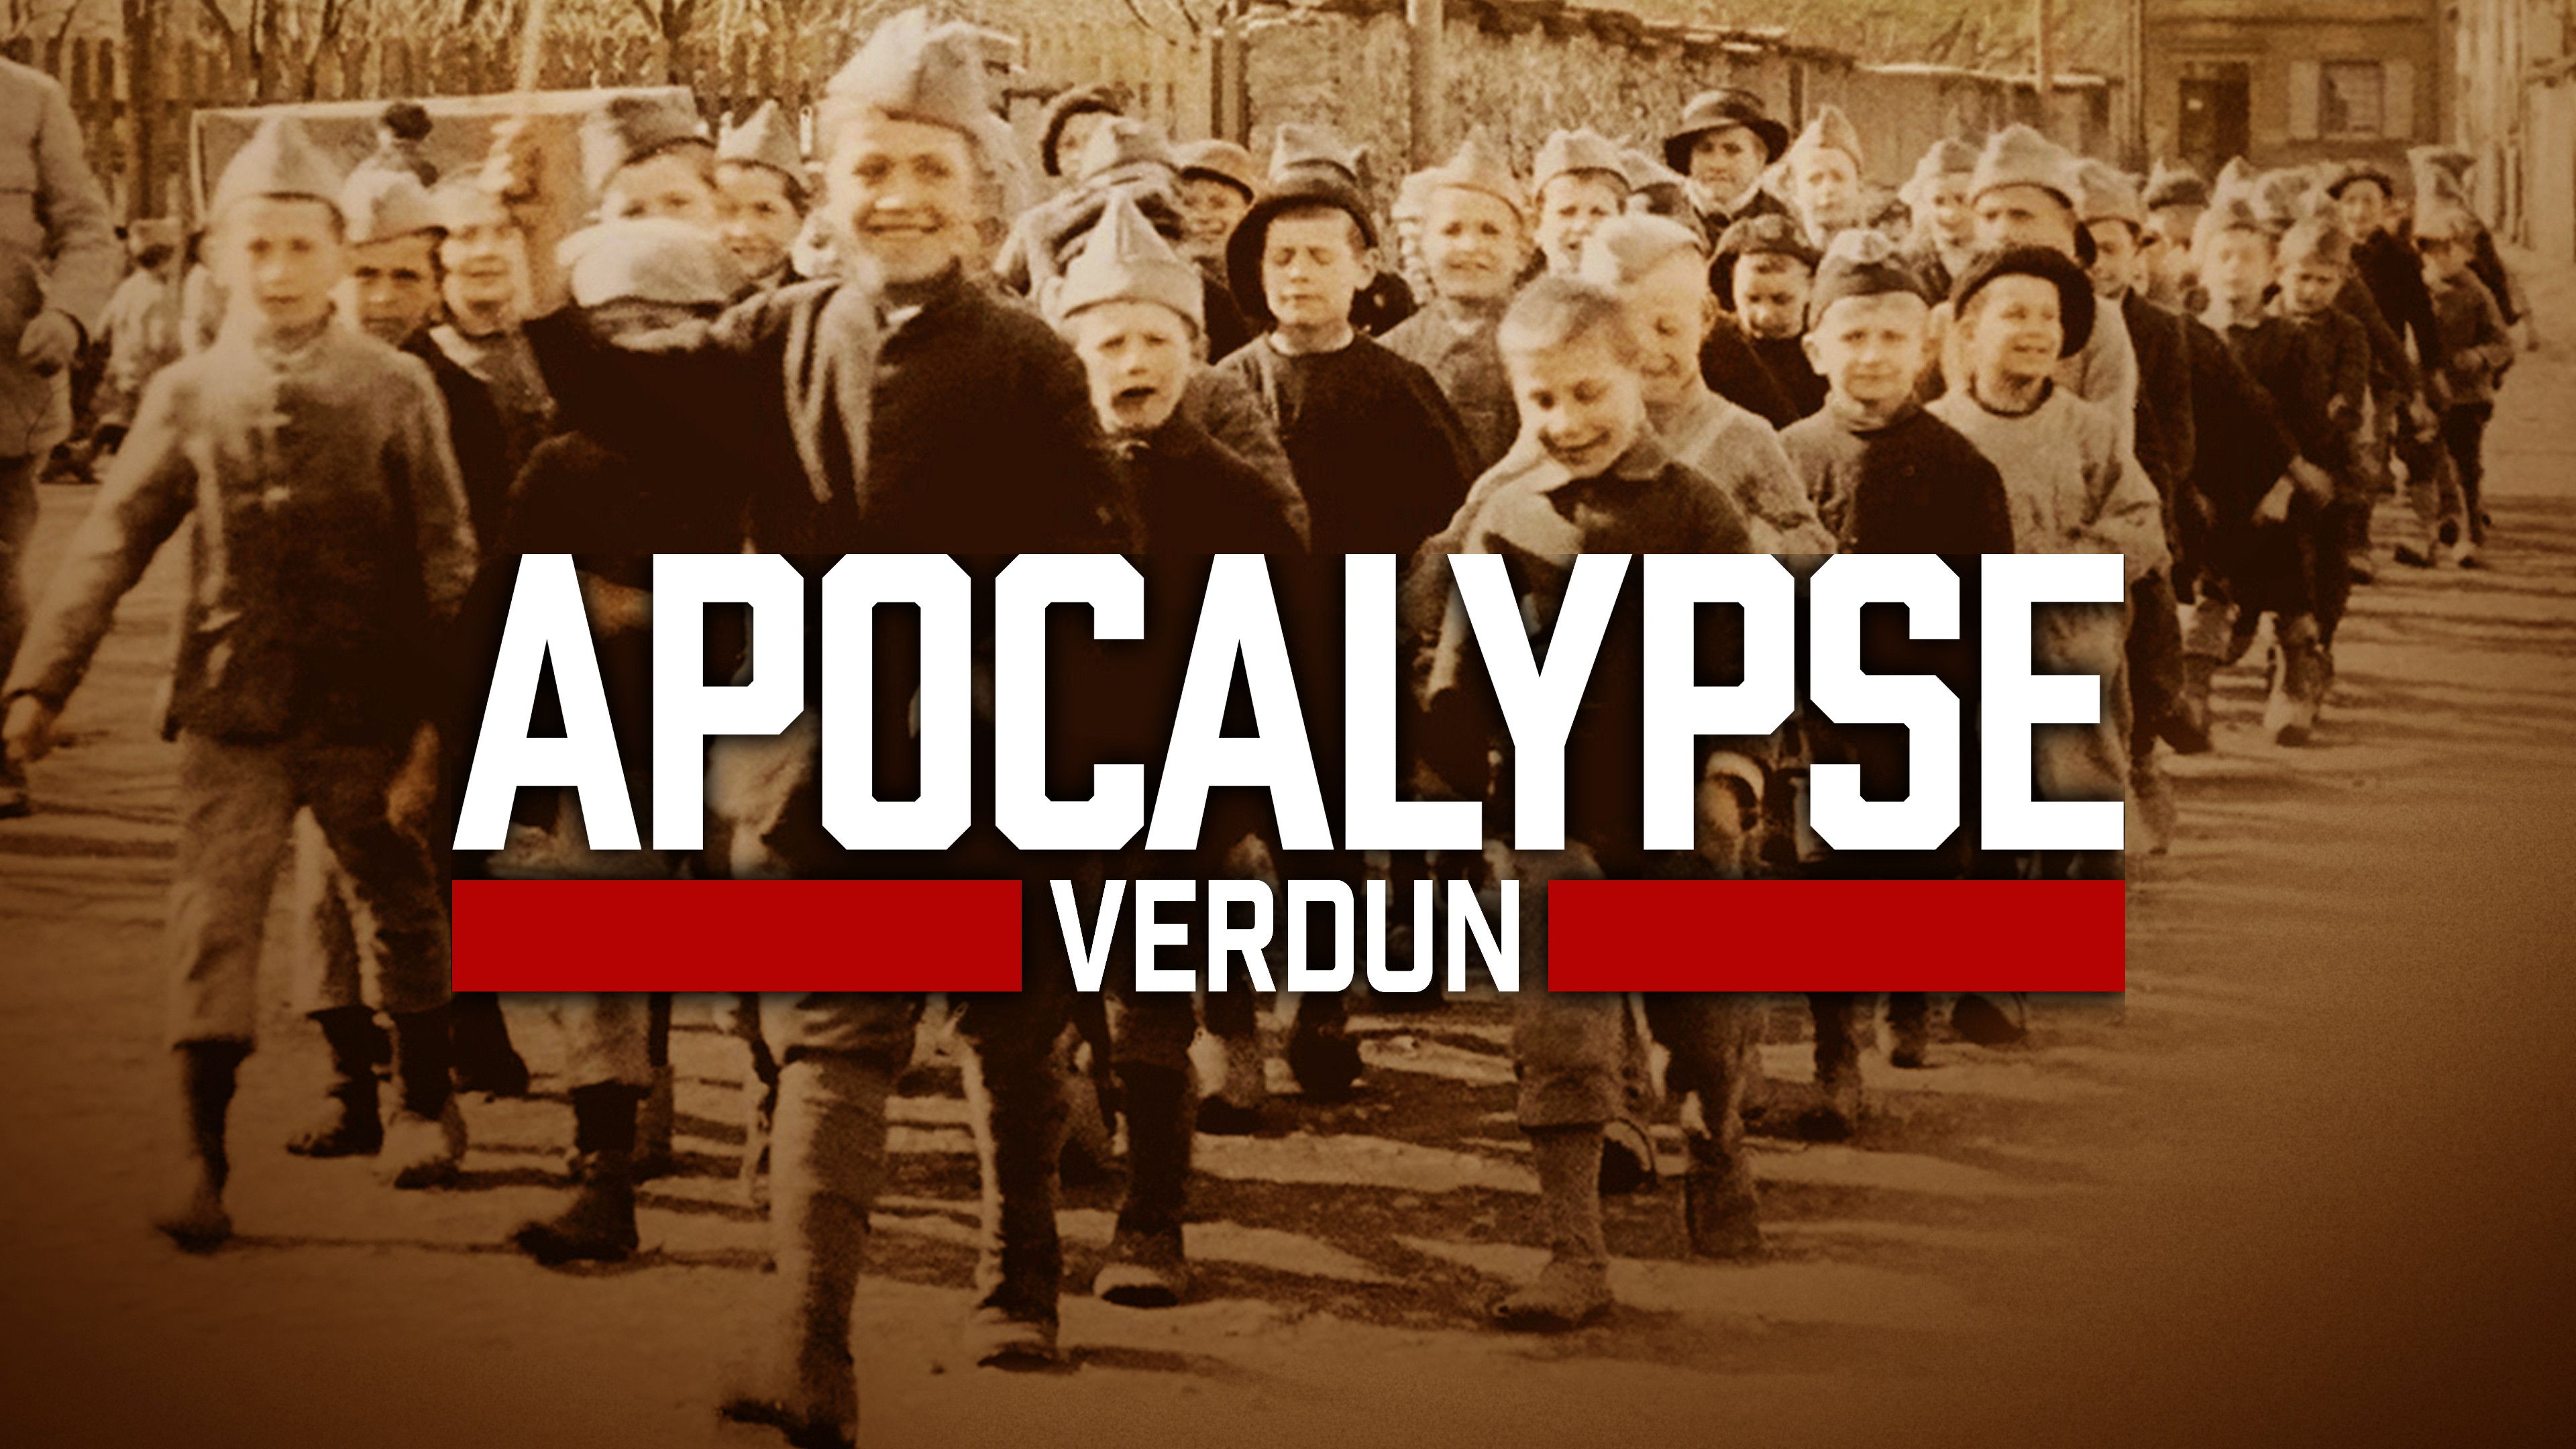 Episode 1: Apocalypse Verdun